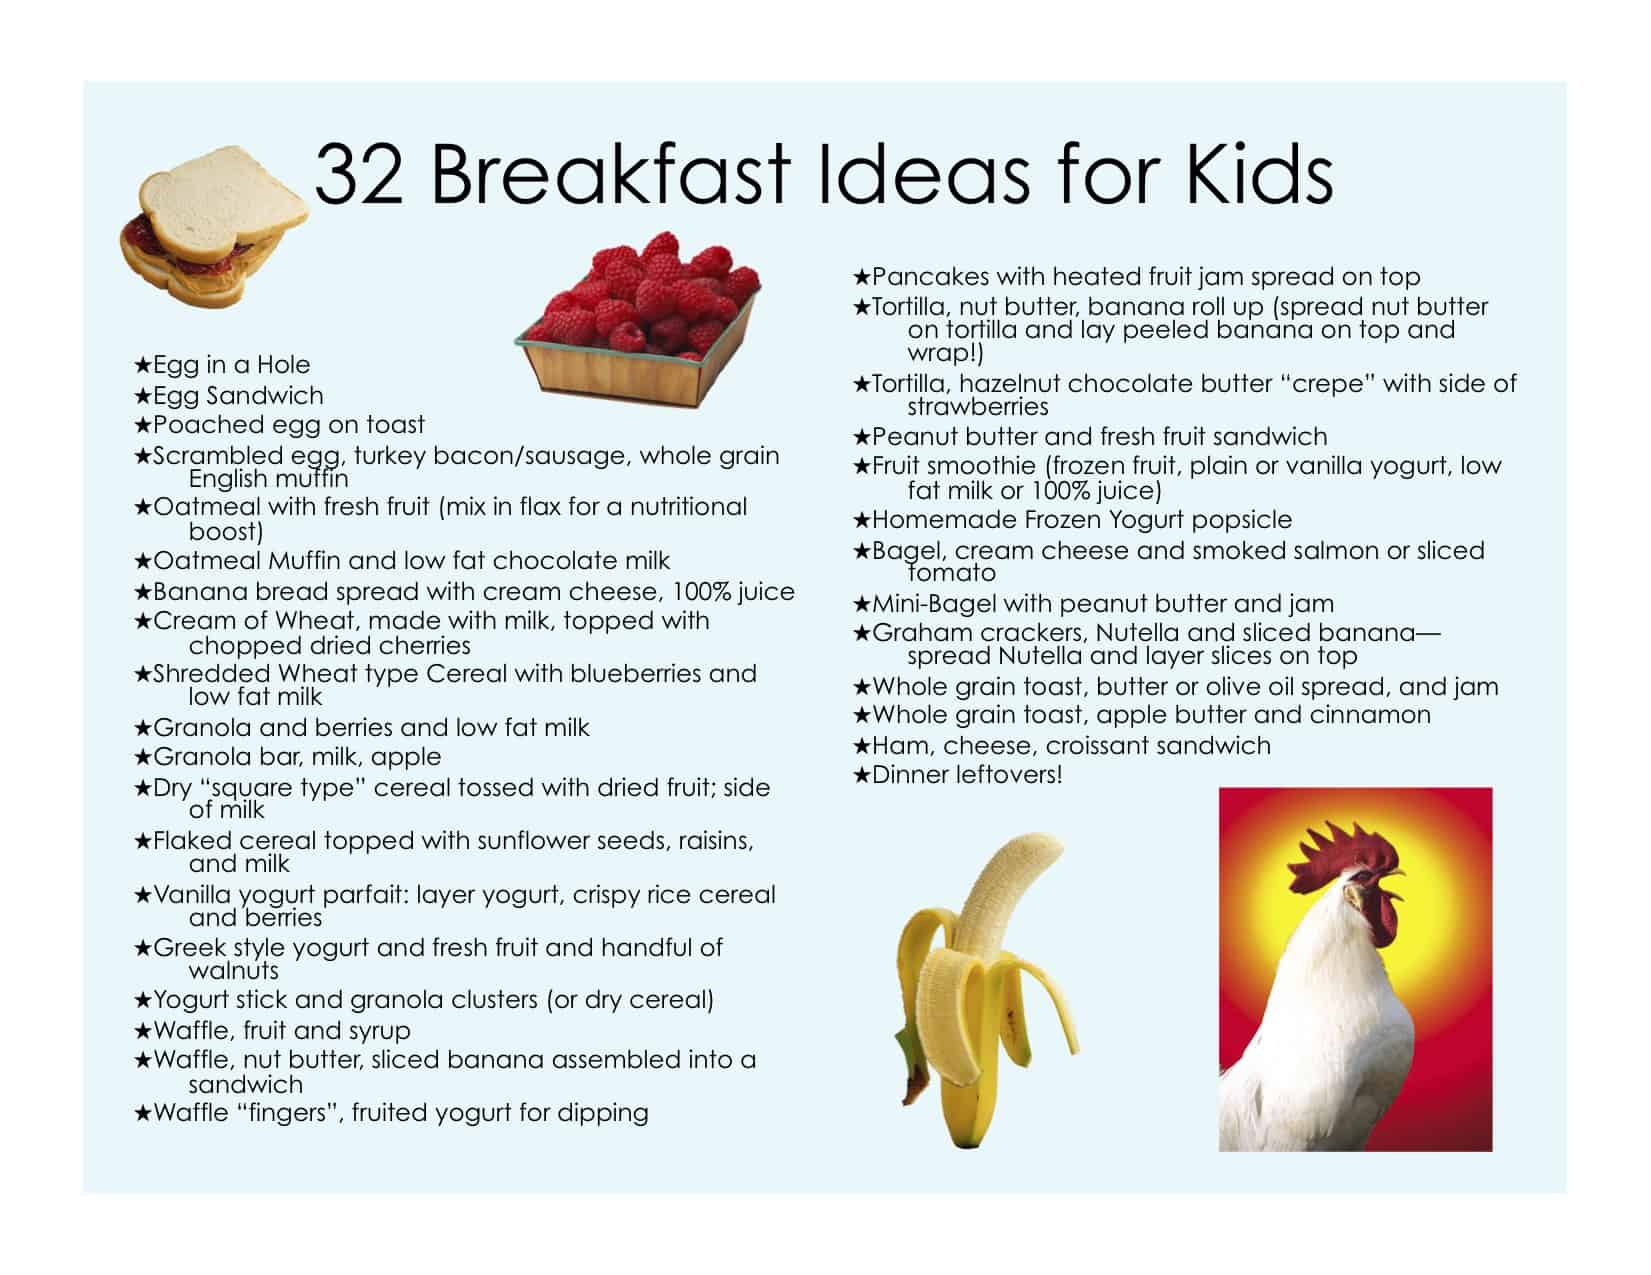 32 Healthy Breakfast Ideas for Kids - Jill Castle